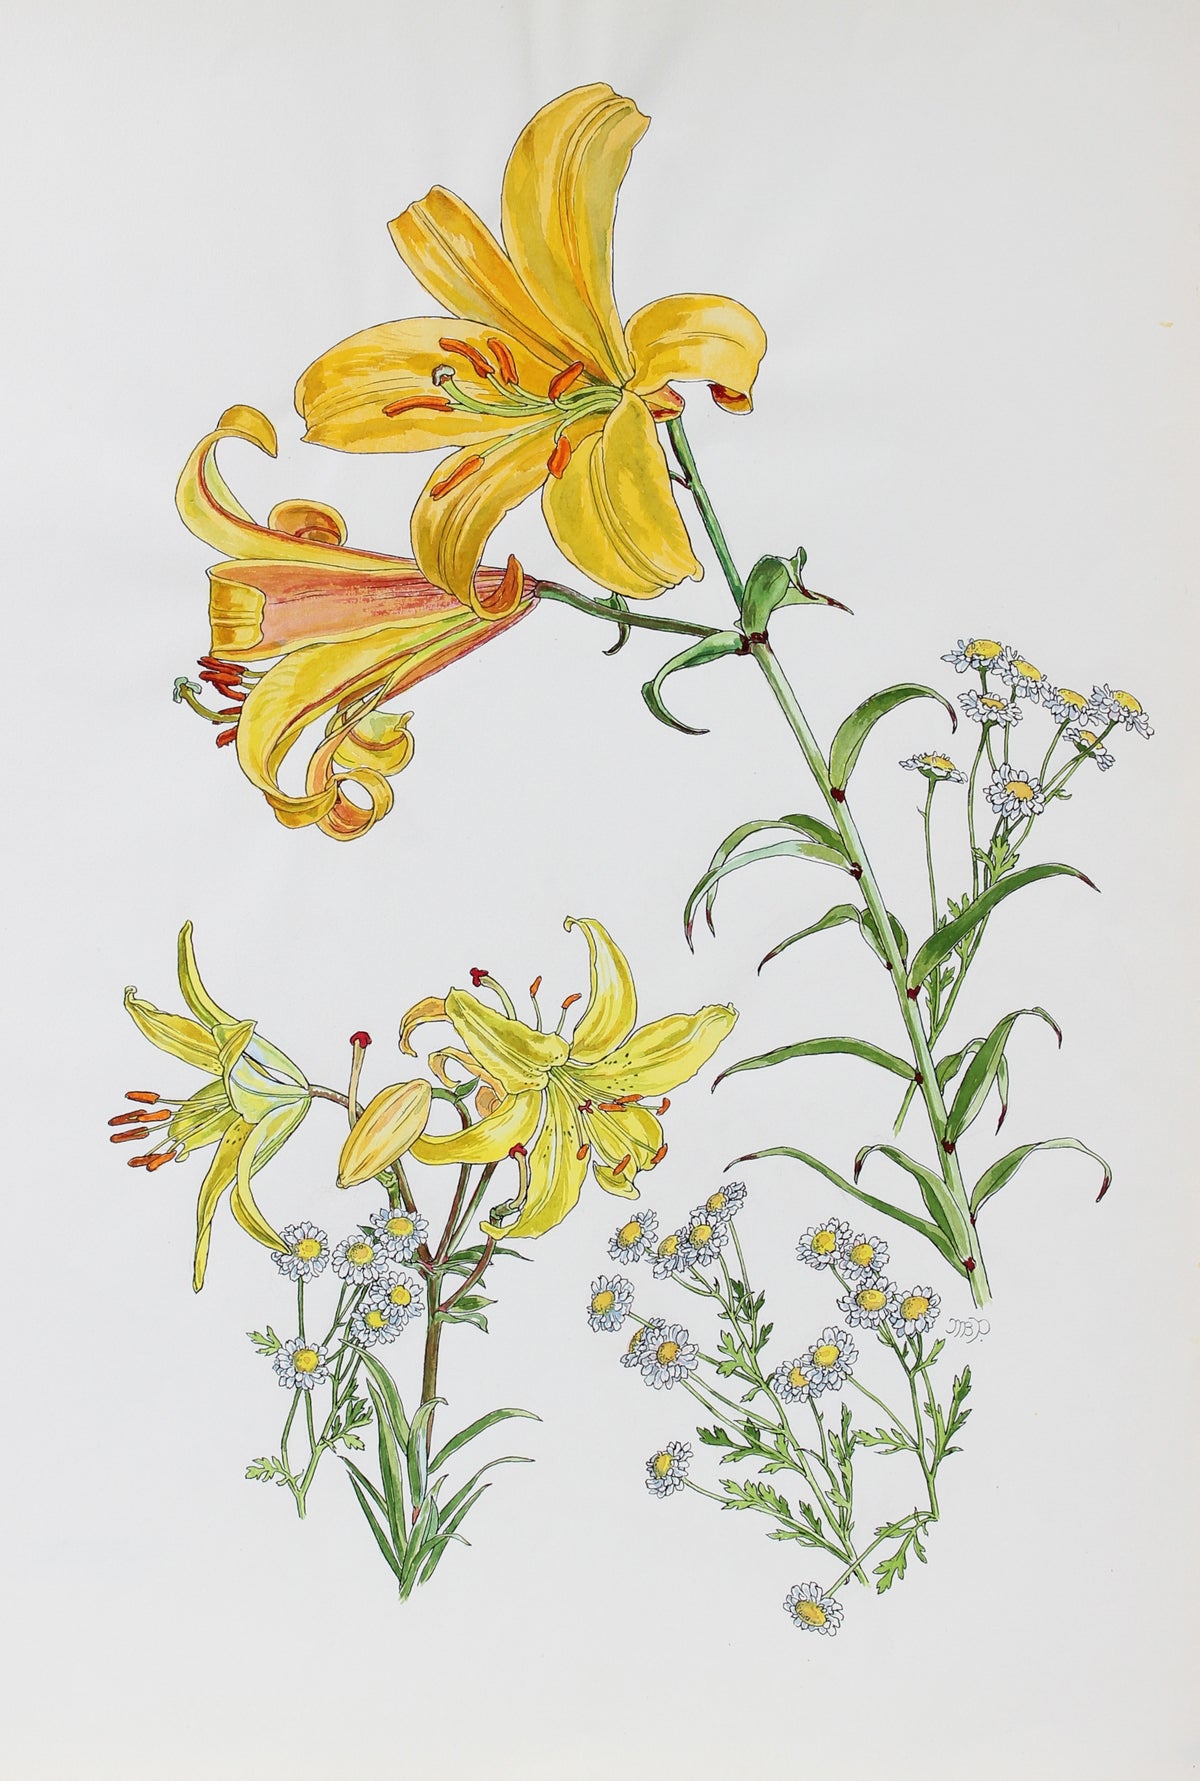 &lt;i&gt;Lily and Composite Study&lt;/i&gt;&lt;br&gt;1977 Watercolor &amp; Ink&lt;br&gt;&lt;br&gt;#93564